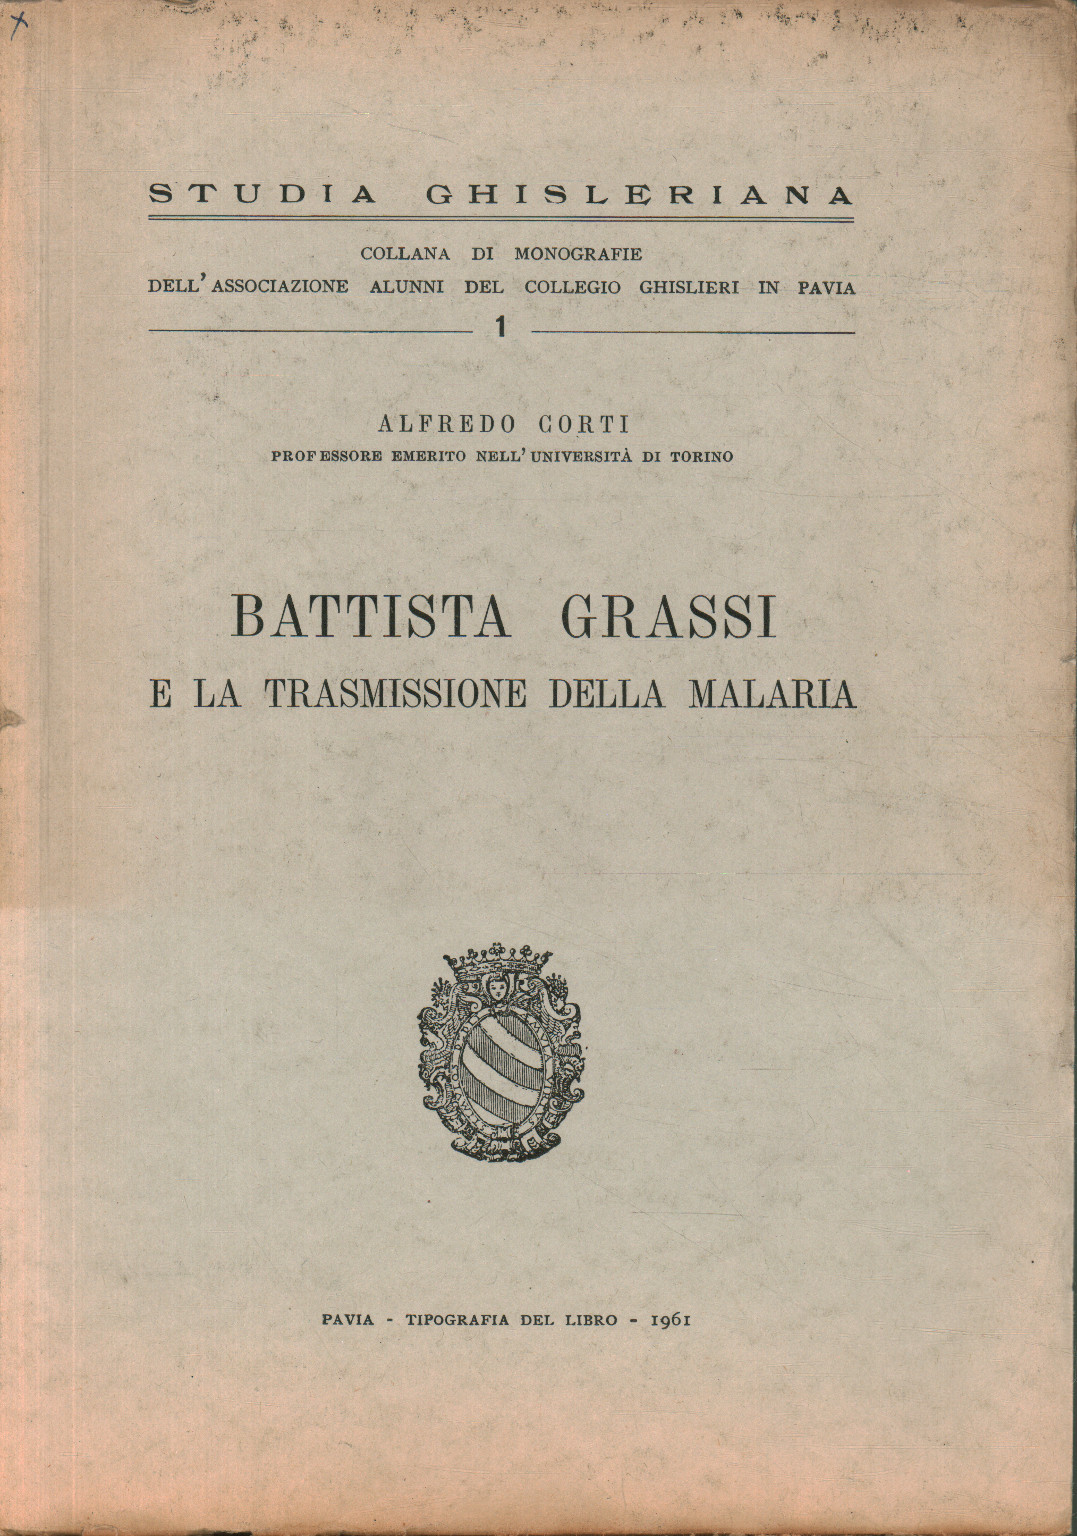 Battista Grassi und die Übertragung von%